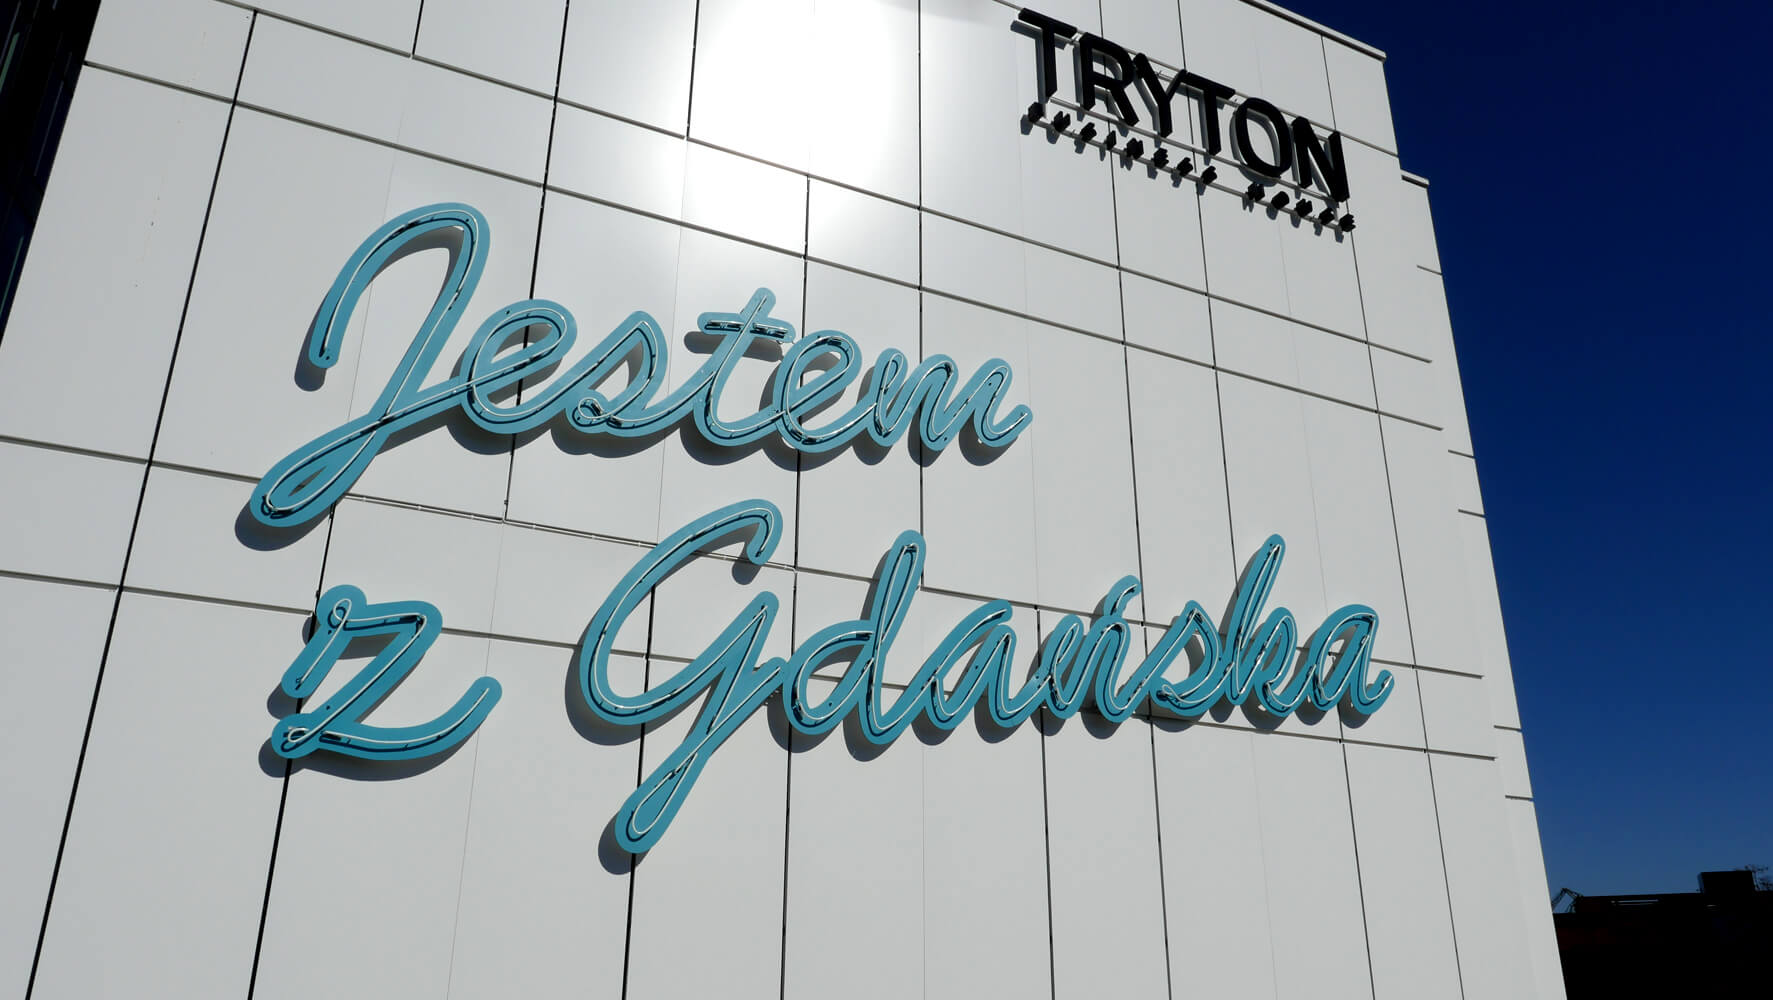 Tritón - Tryton - cartel de neón "Soy de Gdansk" colocado en una fachada